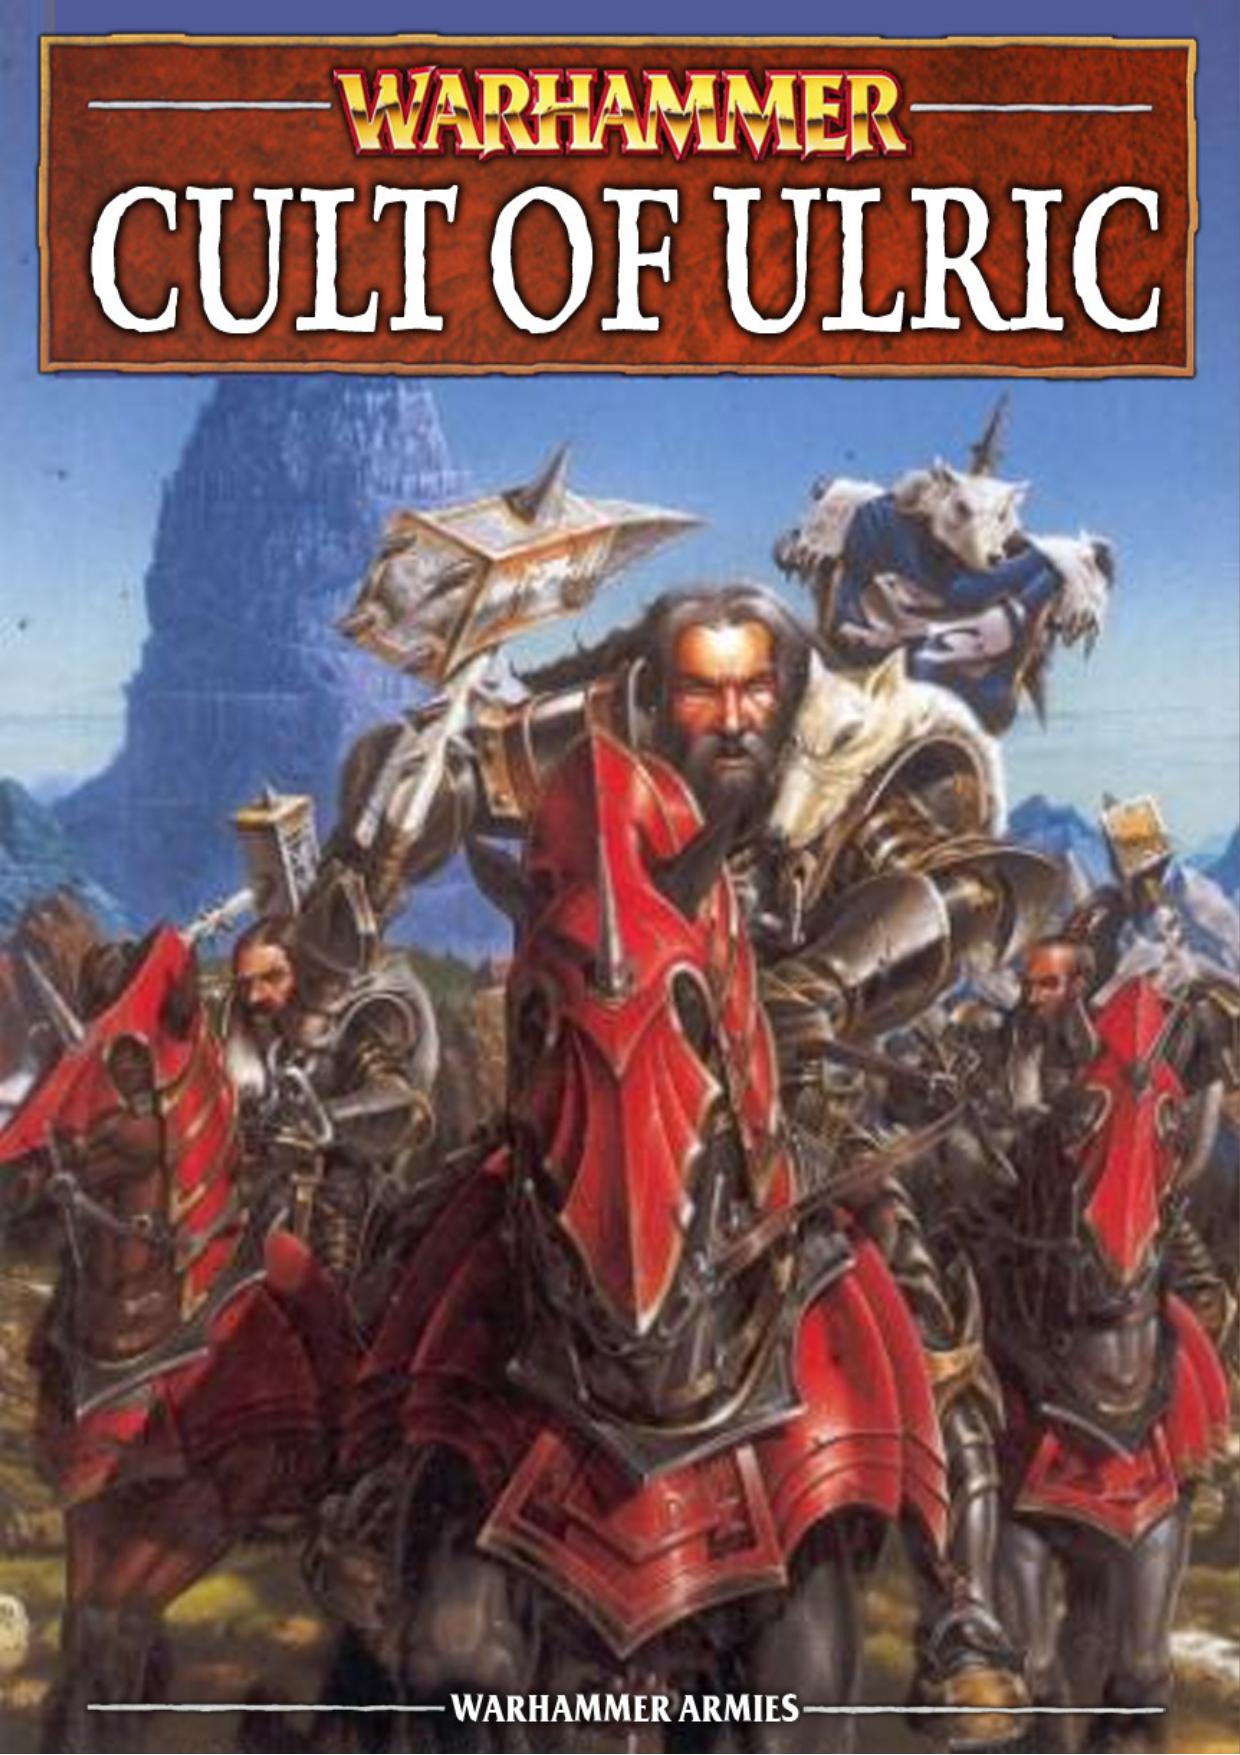 Microsoft Word - Warhammer - Cult of Ulric